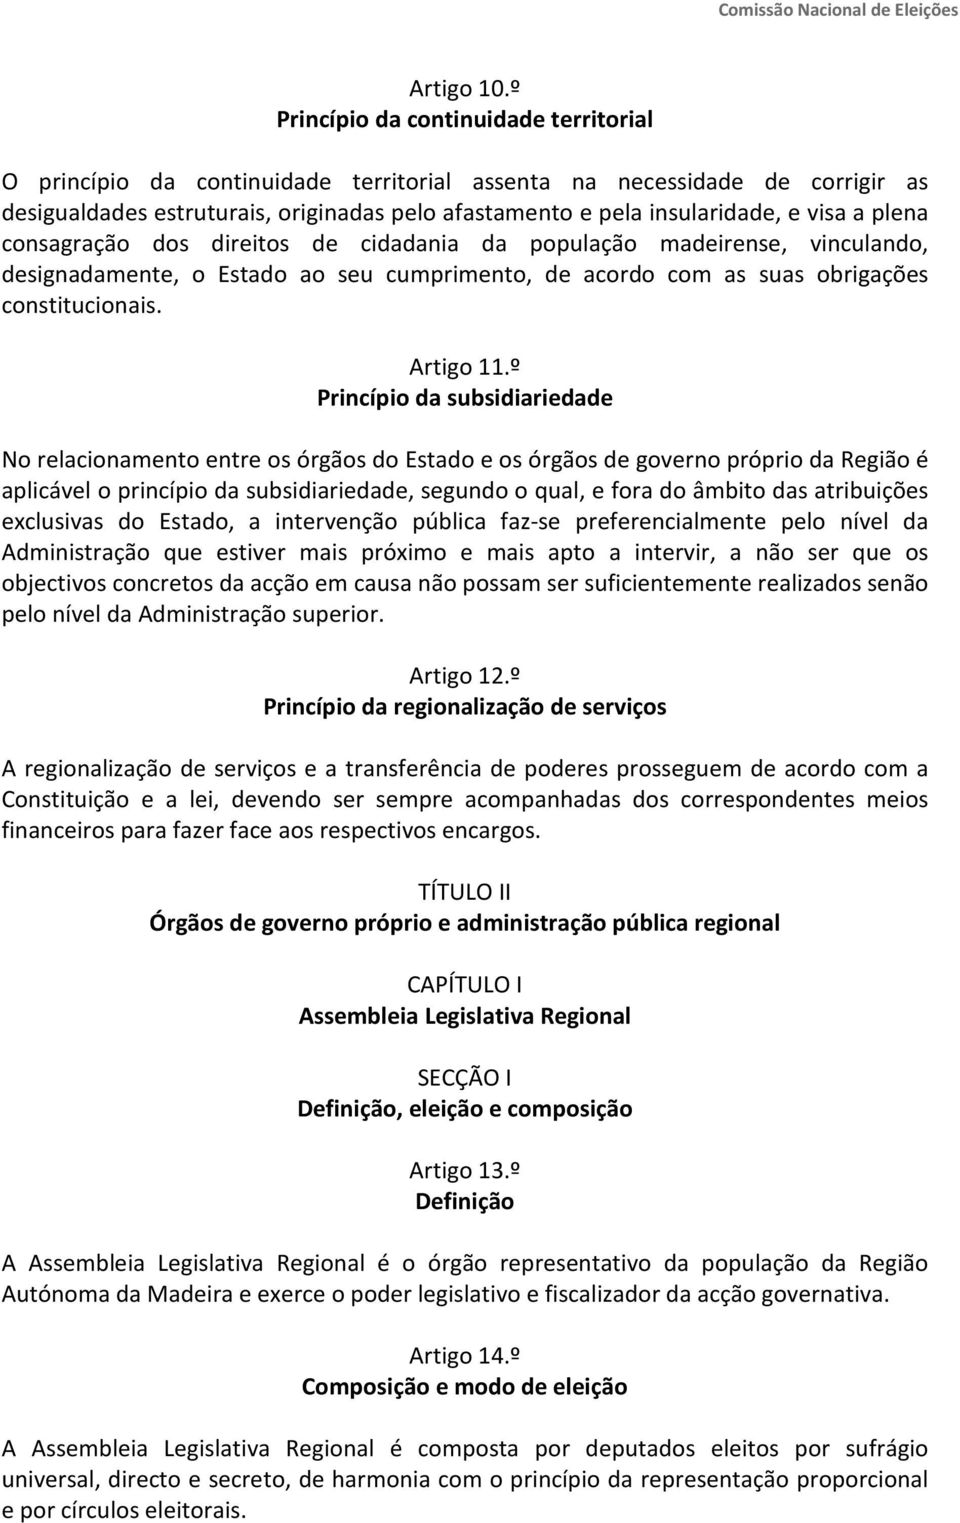 visa a plena consagração dos direitos de cidadania da população madeirense, vinculando, designadamente, o Estado ao seu cumprimento, de acordo com as suas obrigações constitucionais. Artigo 11.